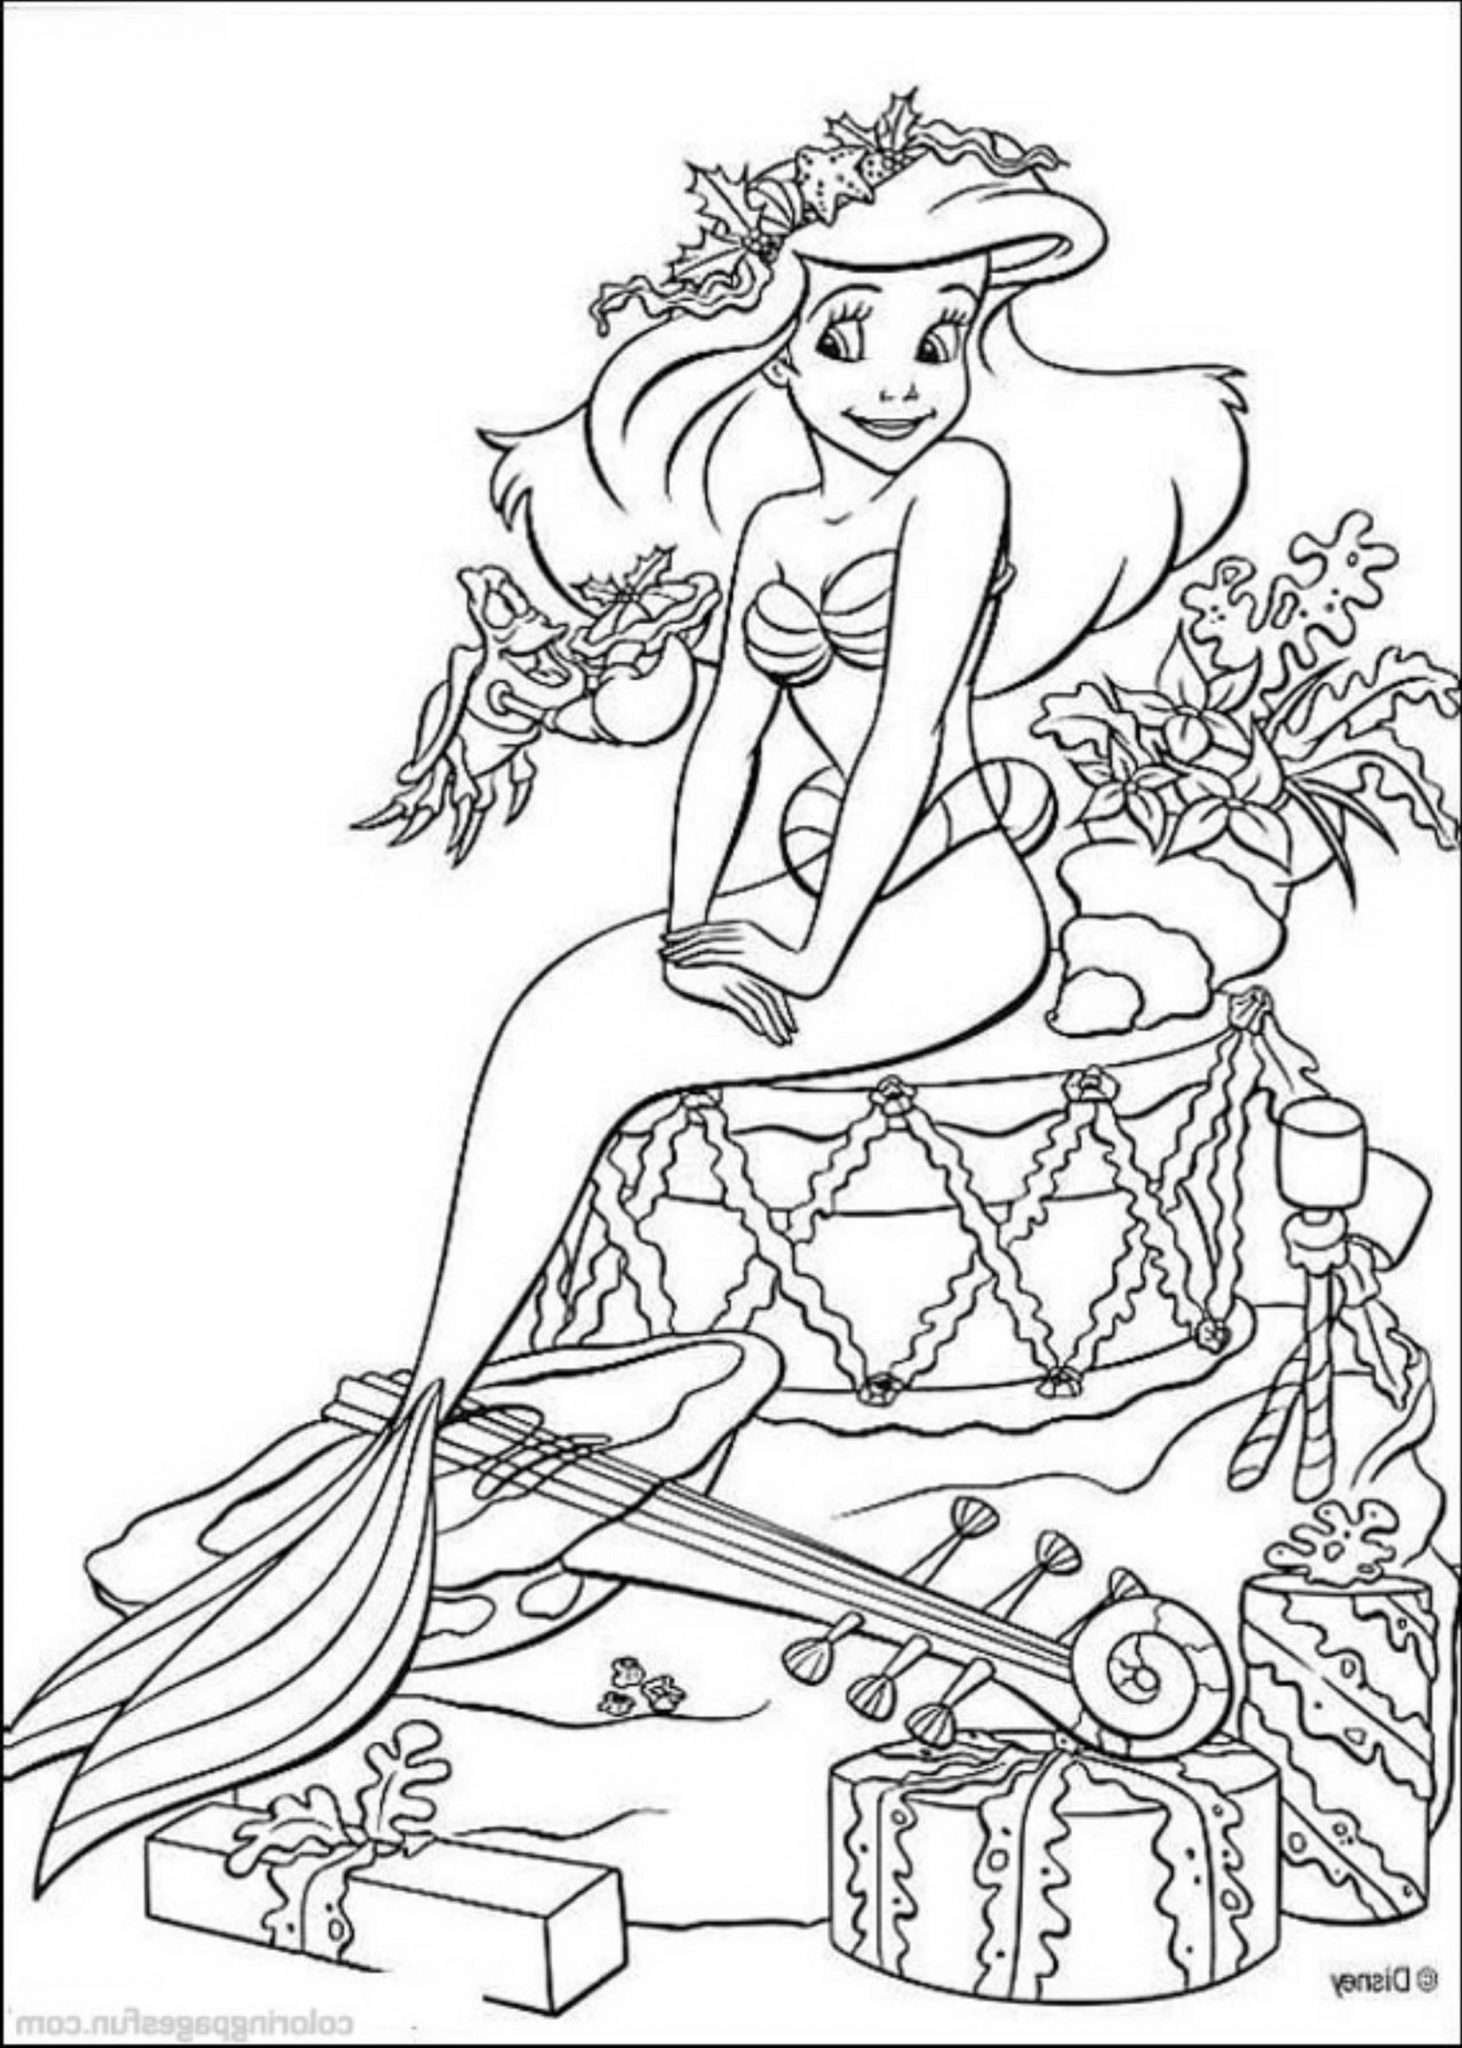 little mermaid coloring book free printable little mermaid coloring pages for kids coloring little mermaid book 